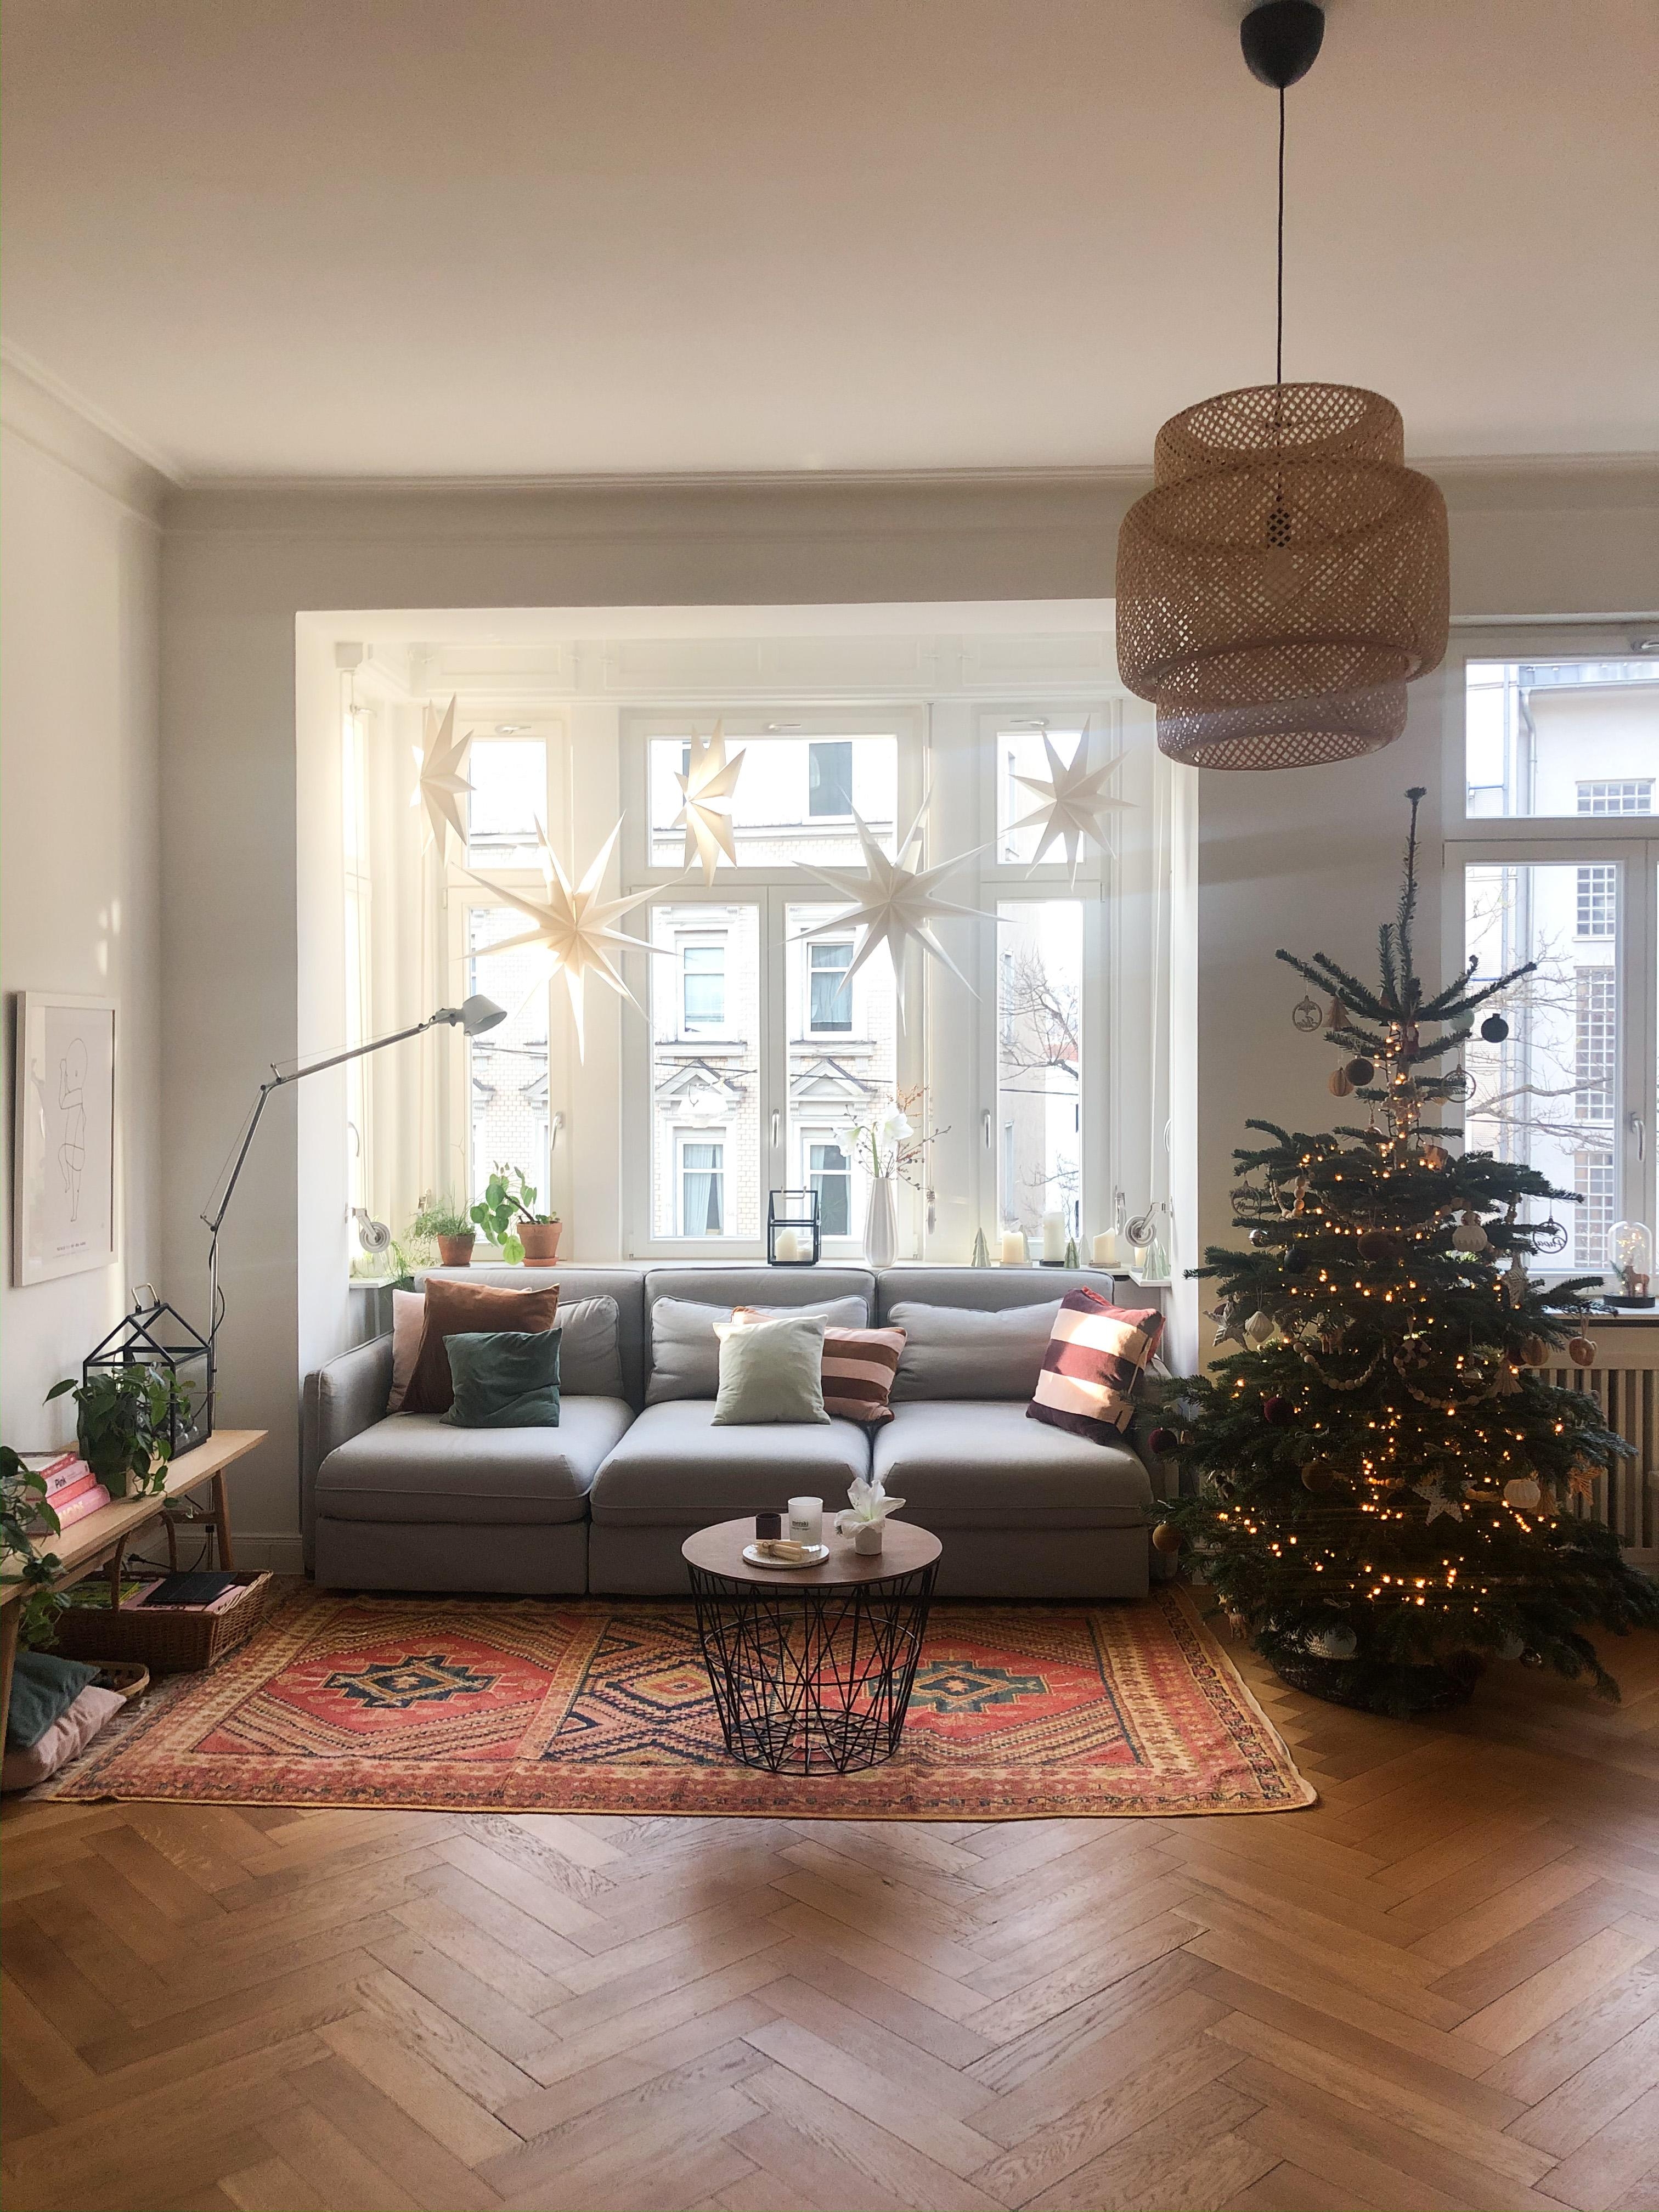 Unsere weihnachtliche Sitzecke #weihnachten #weihnachtsdeko #altbau #altbauliebe #christbaum 